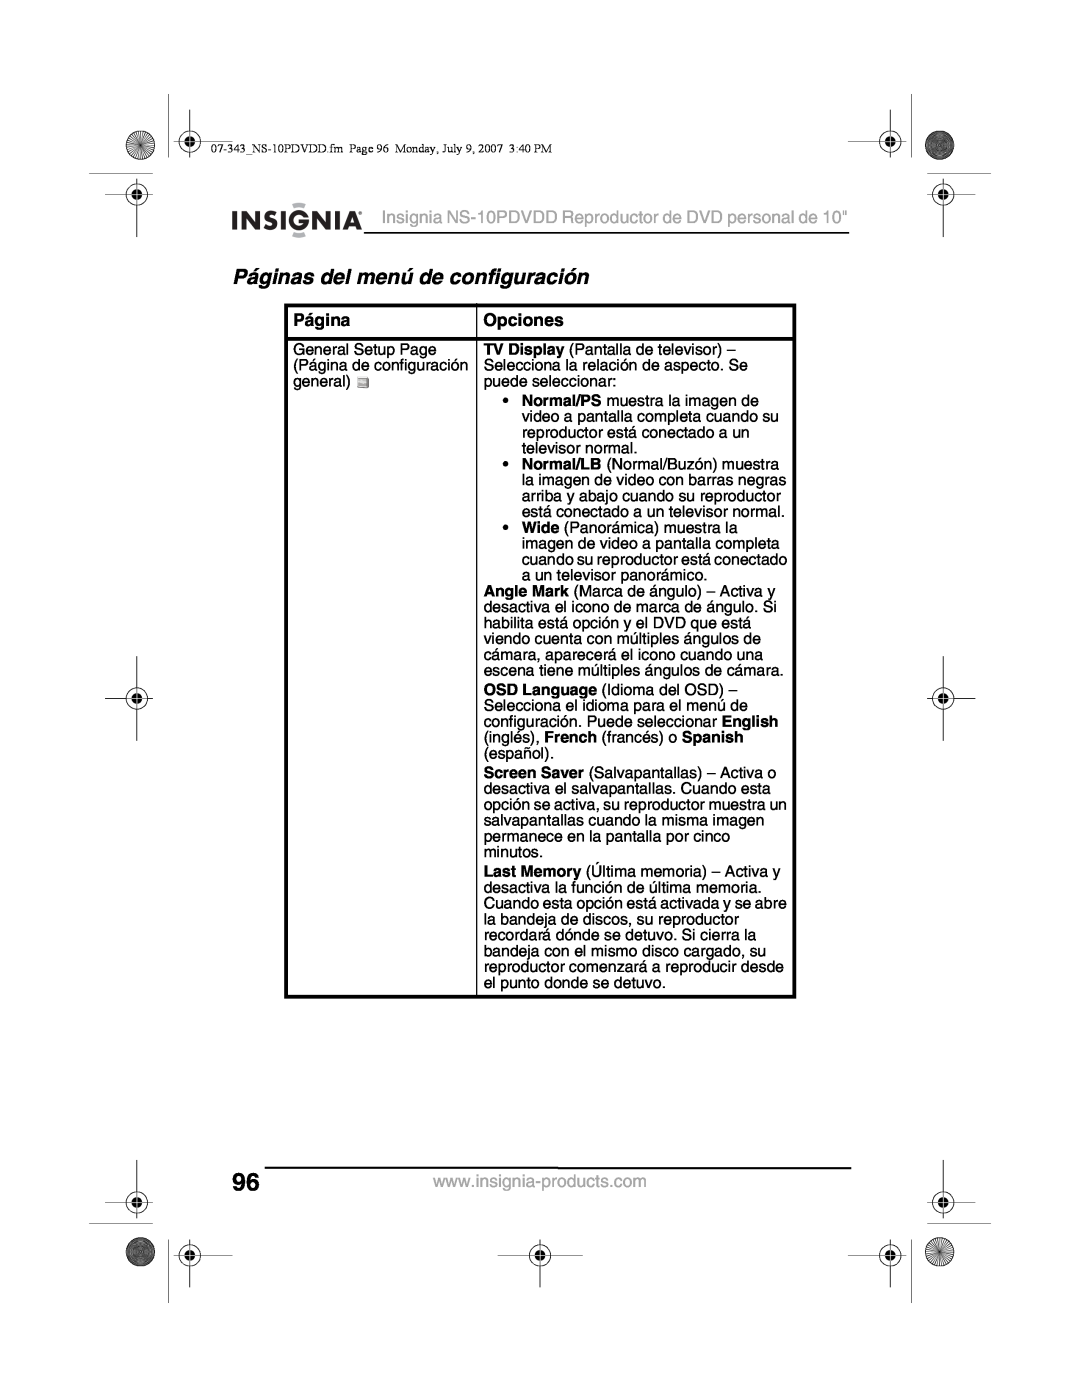 Insignia manual Páginas del menú de configuración, Opciones, Insignia NS-10PDVDD Reproductor de DVD personal de 